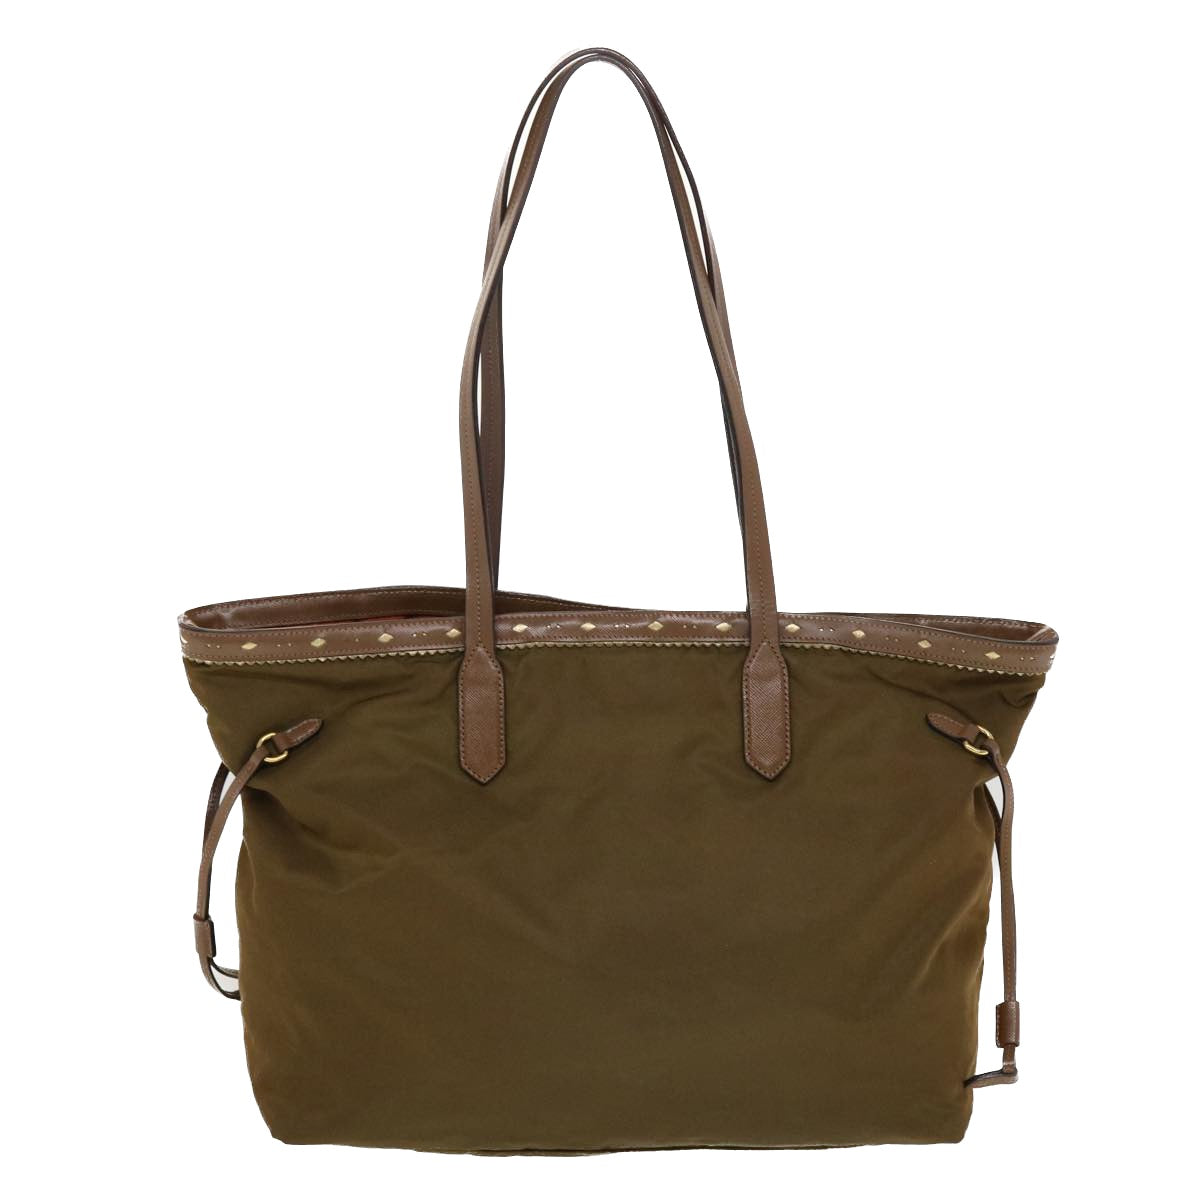 PRADA Tote Bag Nylon Leather Khaki Auth bs6185 - 0